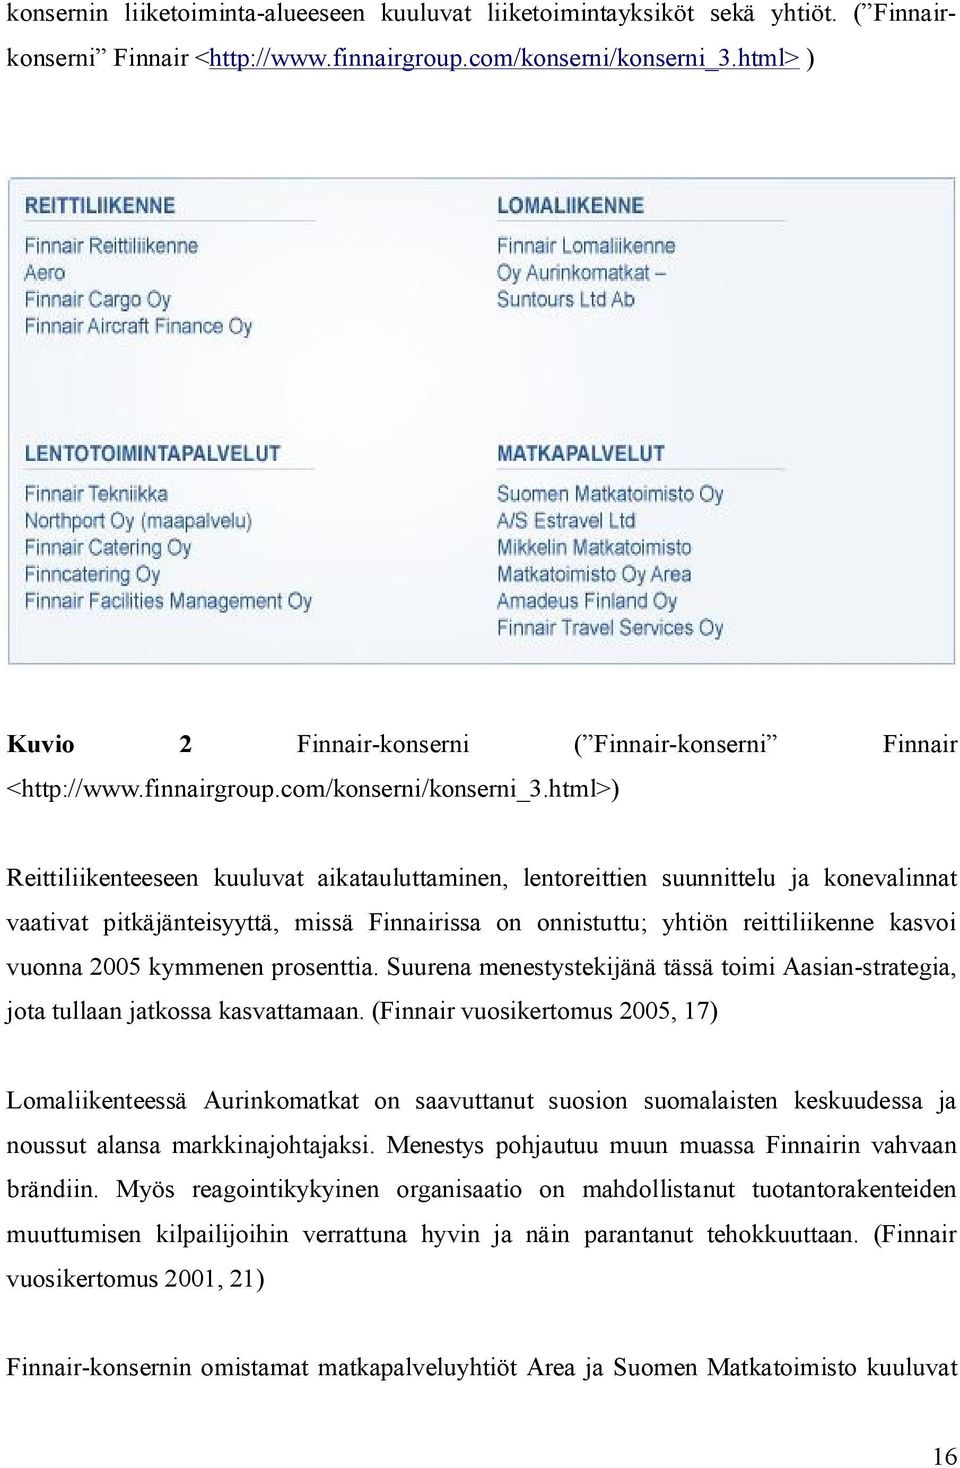 html>) Reittiliikenteeseen kuuluvat aikatauluttaminen, lentoreittien suunnittelu ja konevalinnat vaativat pitkäjänteisyyttä, missä Finnairissa on onnistuttu; yhtiön reittiliikenne kasvoi vuonna 2005